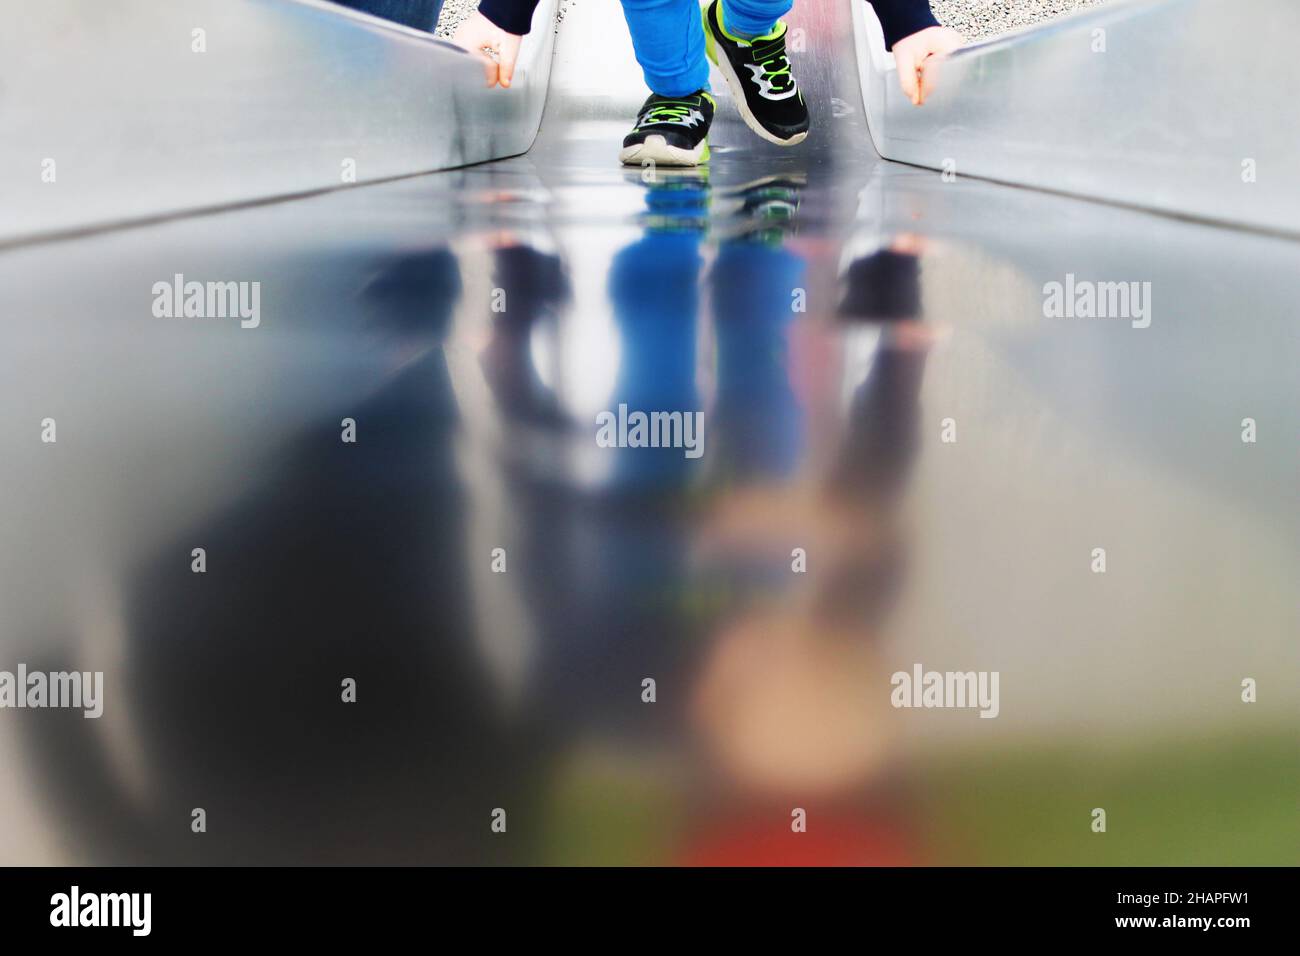 Teilansicht eines Kindes auf einer Spielplatzrutsche, Spiegelung in Metalloberfläche. Stockfoto